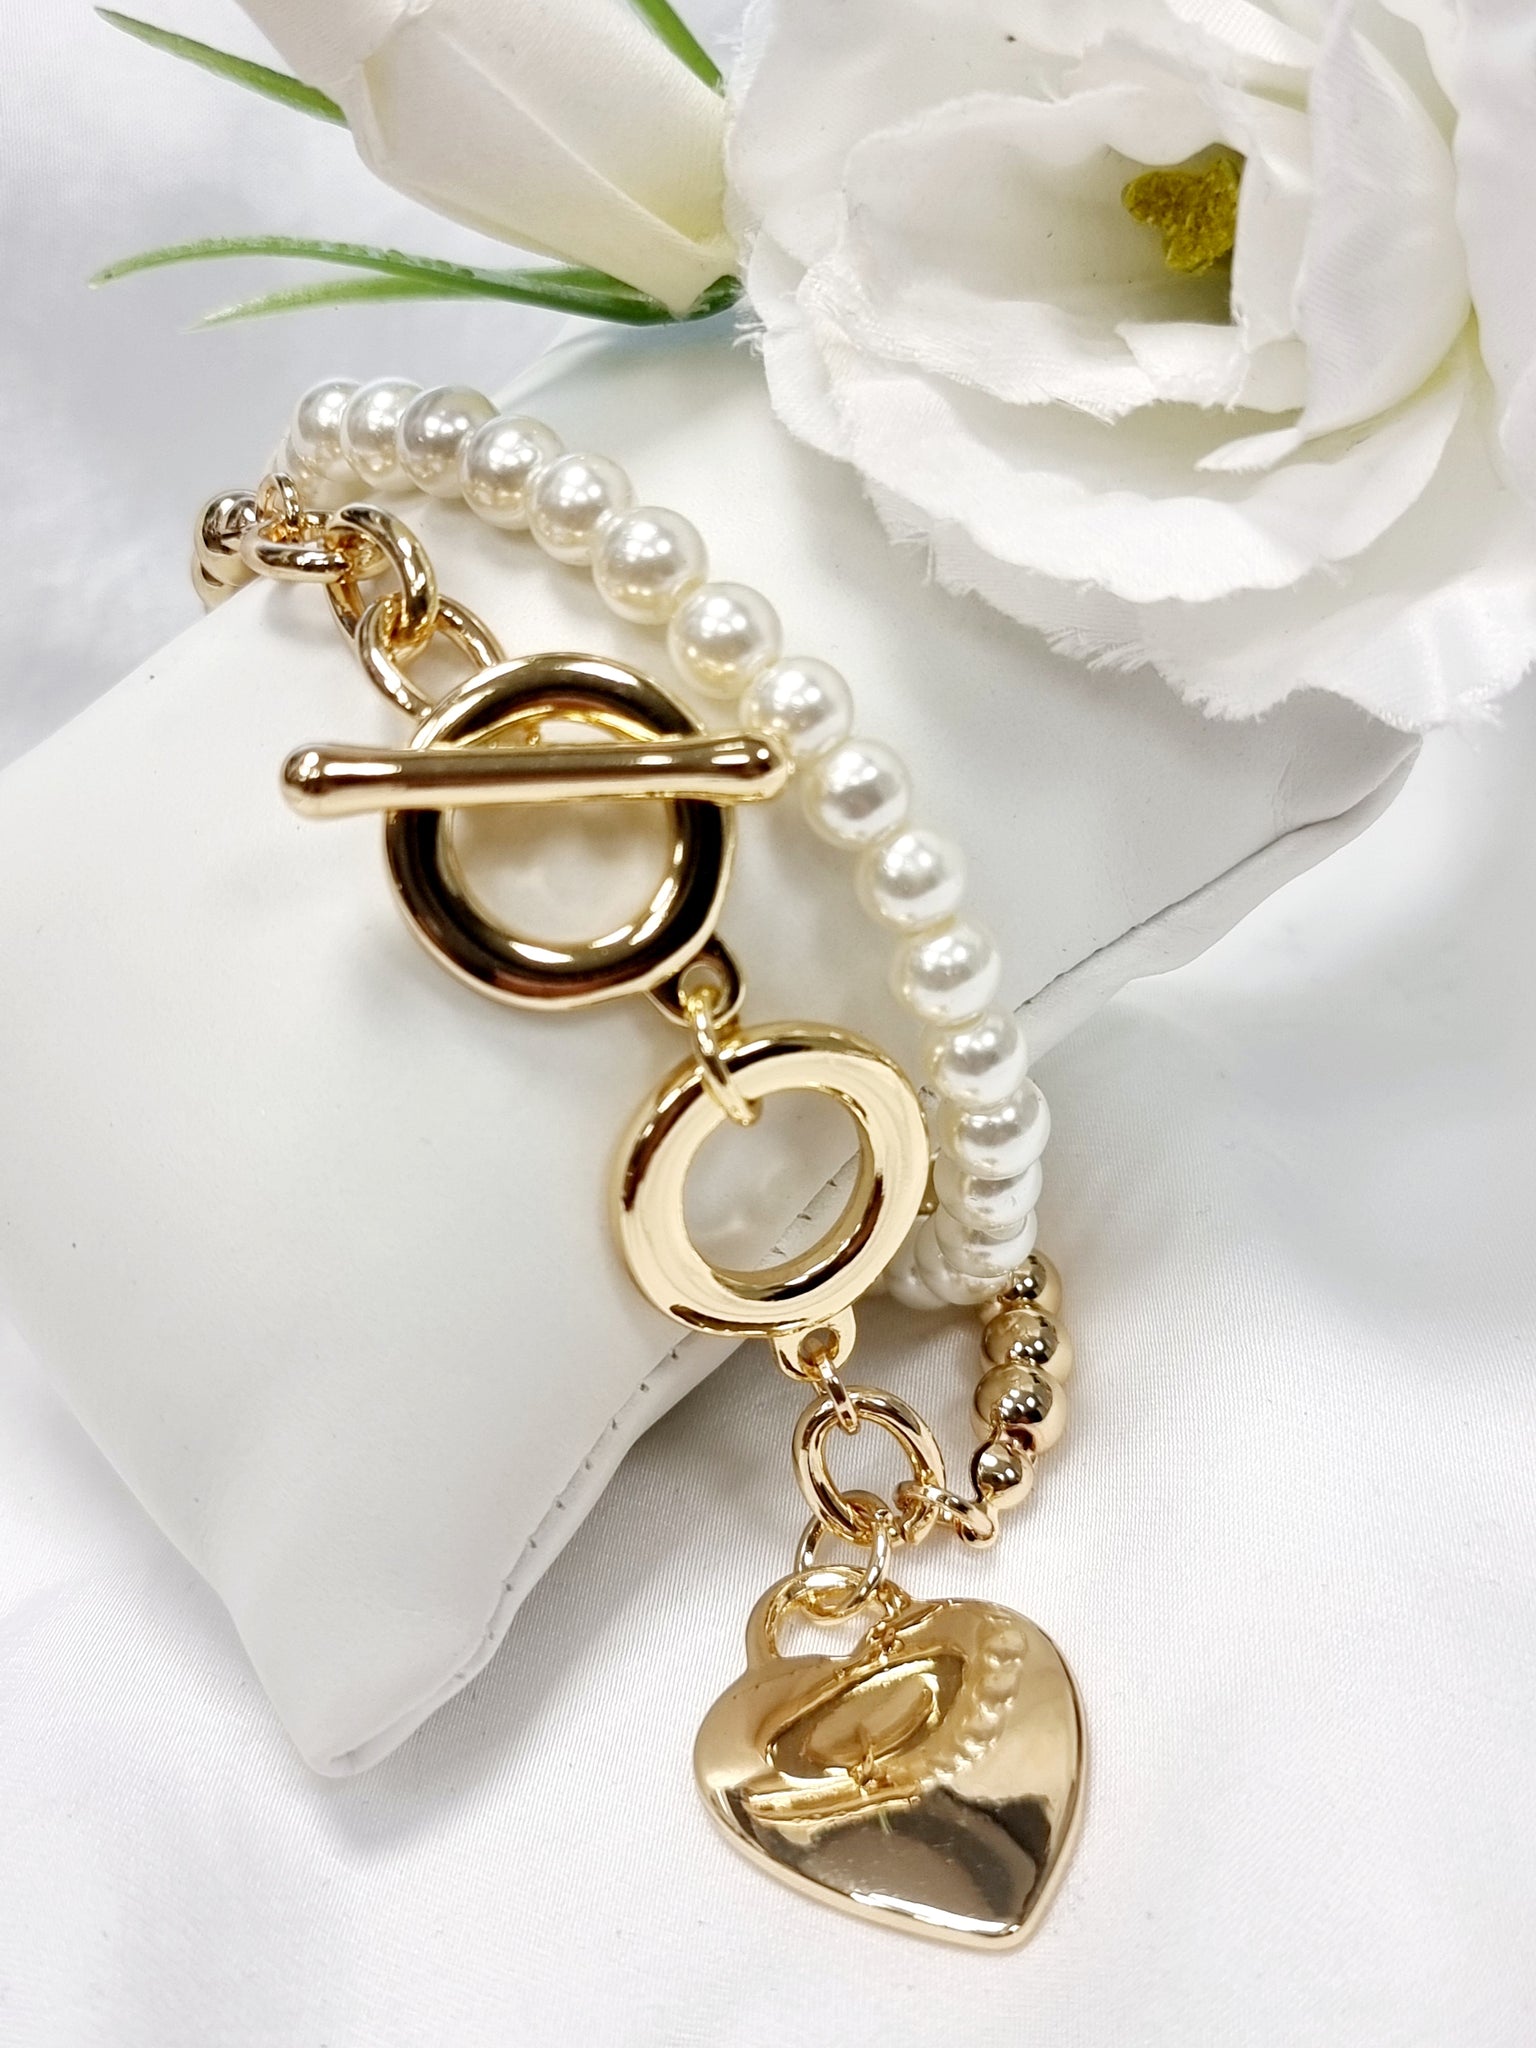 Edles Armband Perlen mit Herz in 2 Varianten "Weiss/Silber und in Gold/Weiss"